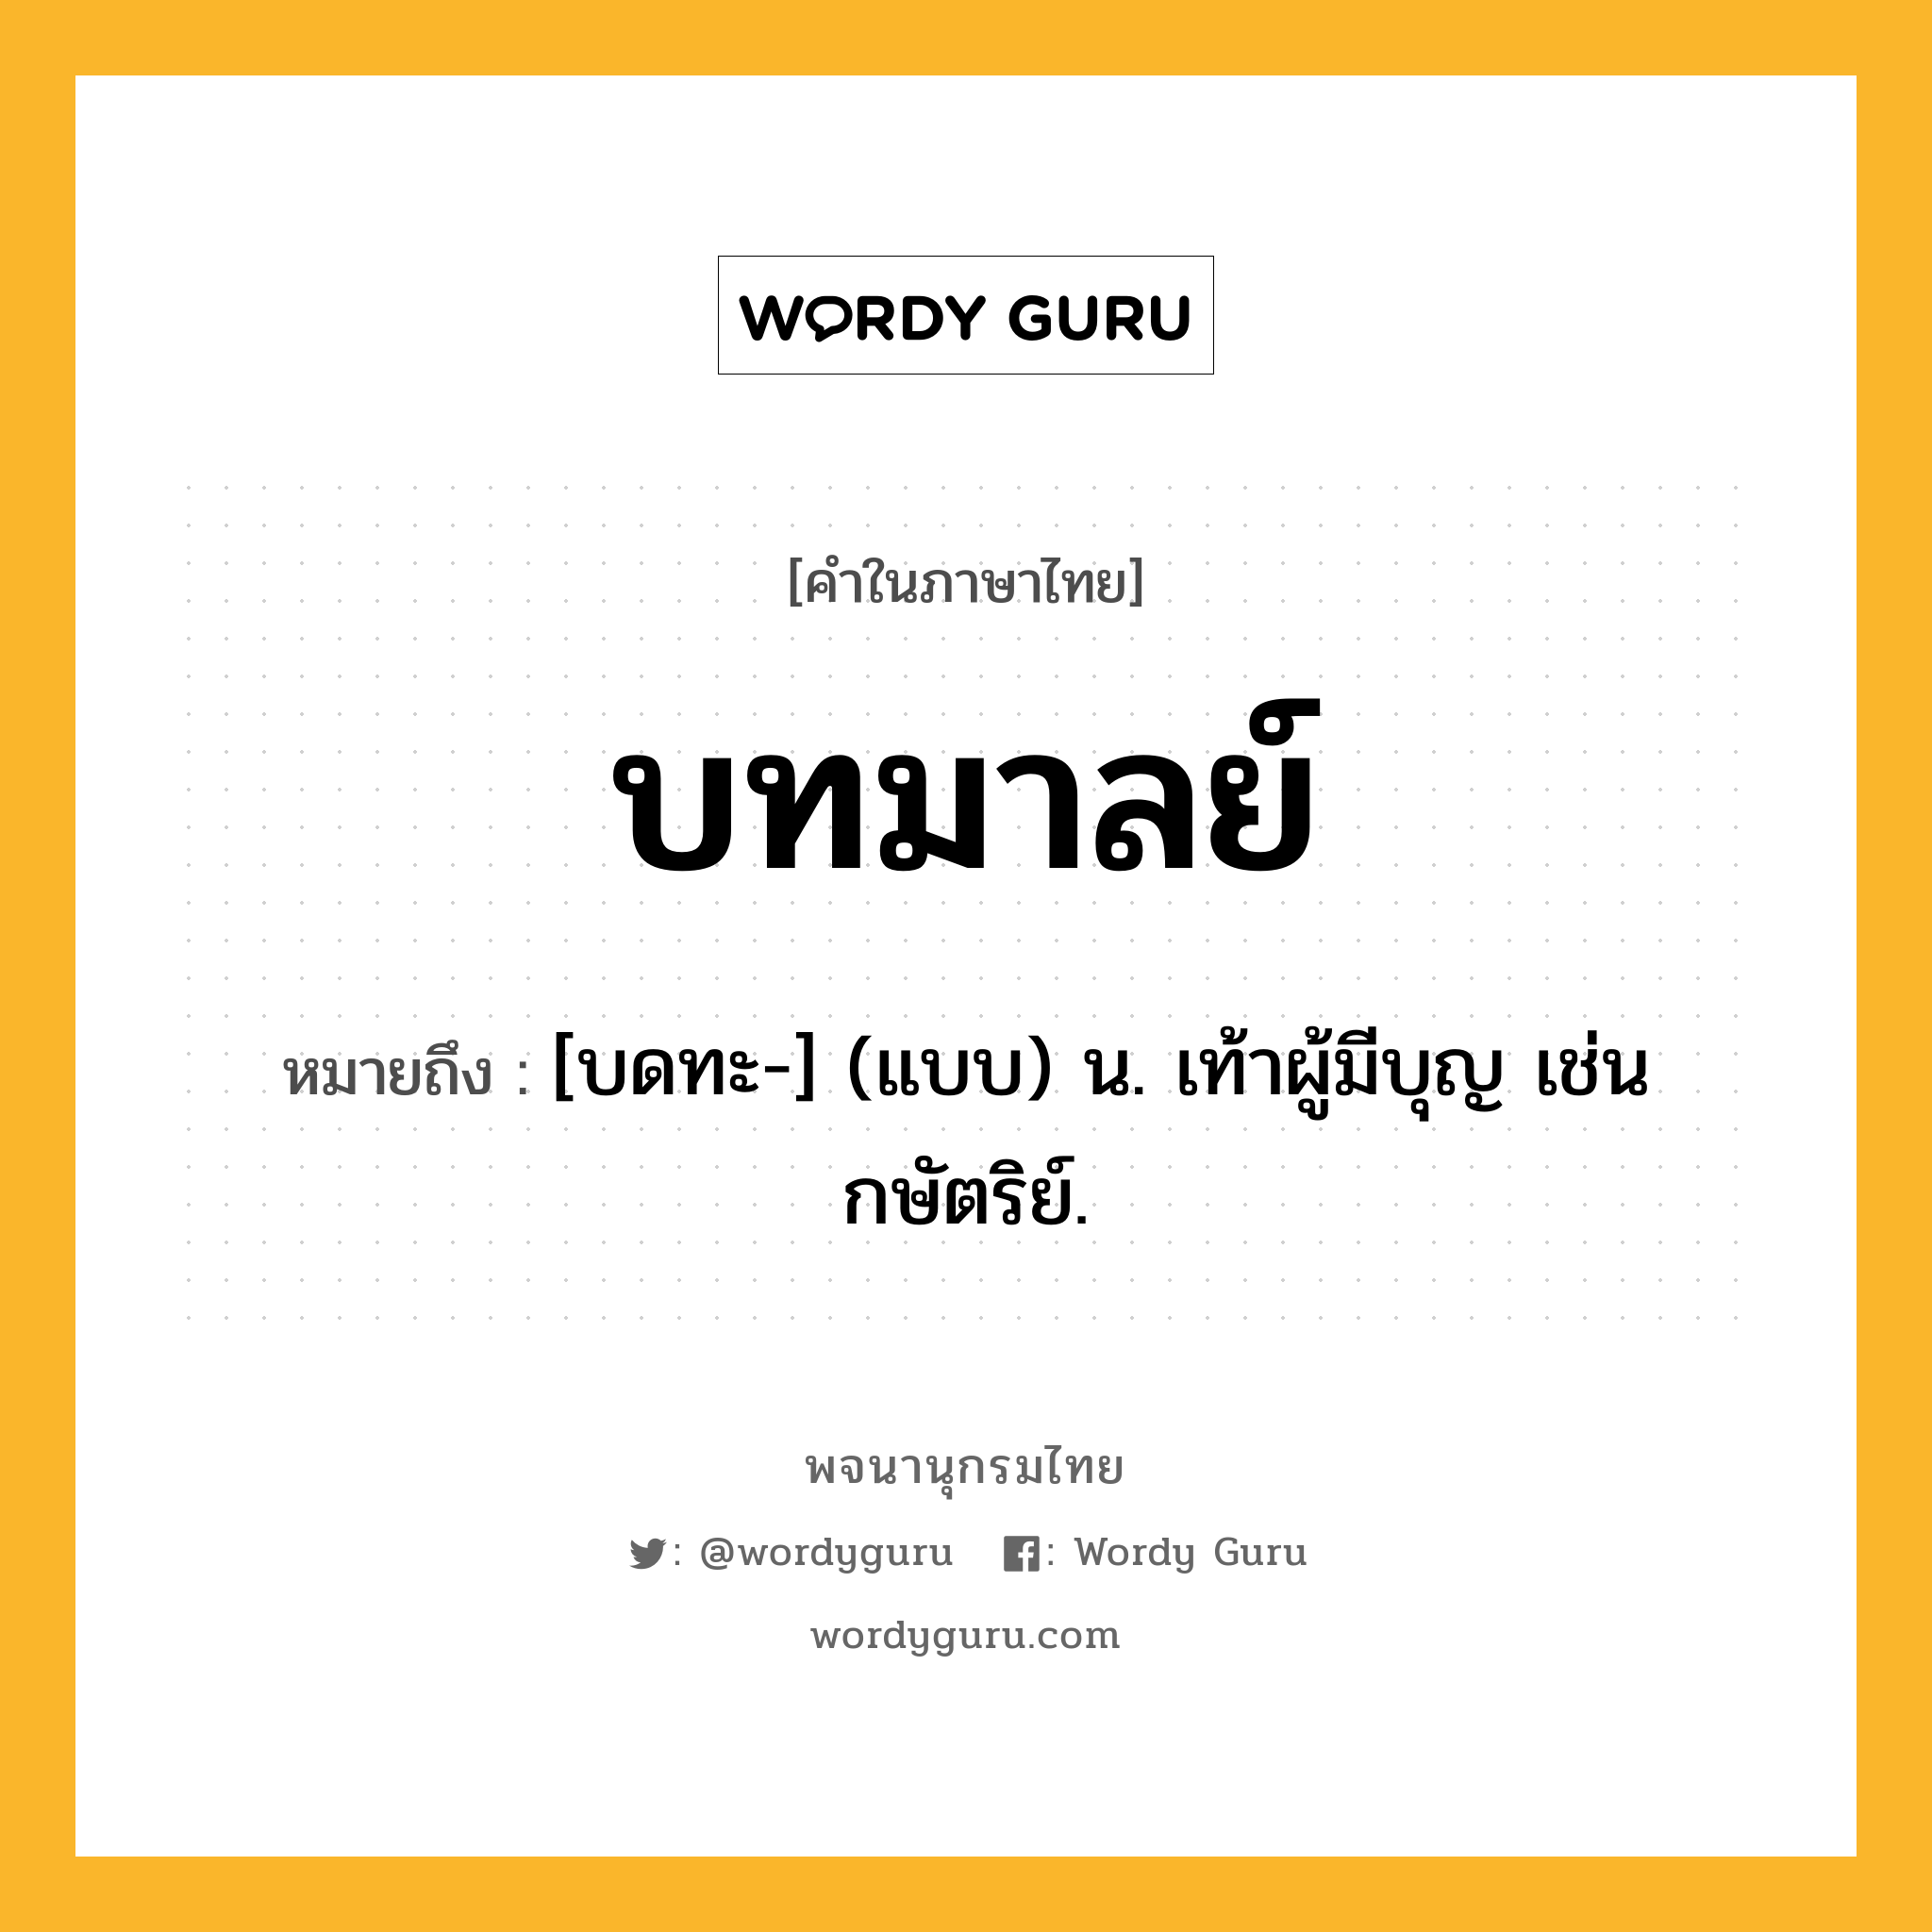 บทมาลย์ ความหมาย หมายถึงอะไร?, คำในภาษาไทย บทมาลย์ หมายถึง [บดทะ-] (แบบ) น. เท้าผู้มีบุญ เช่นกษัตริย์.